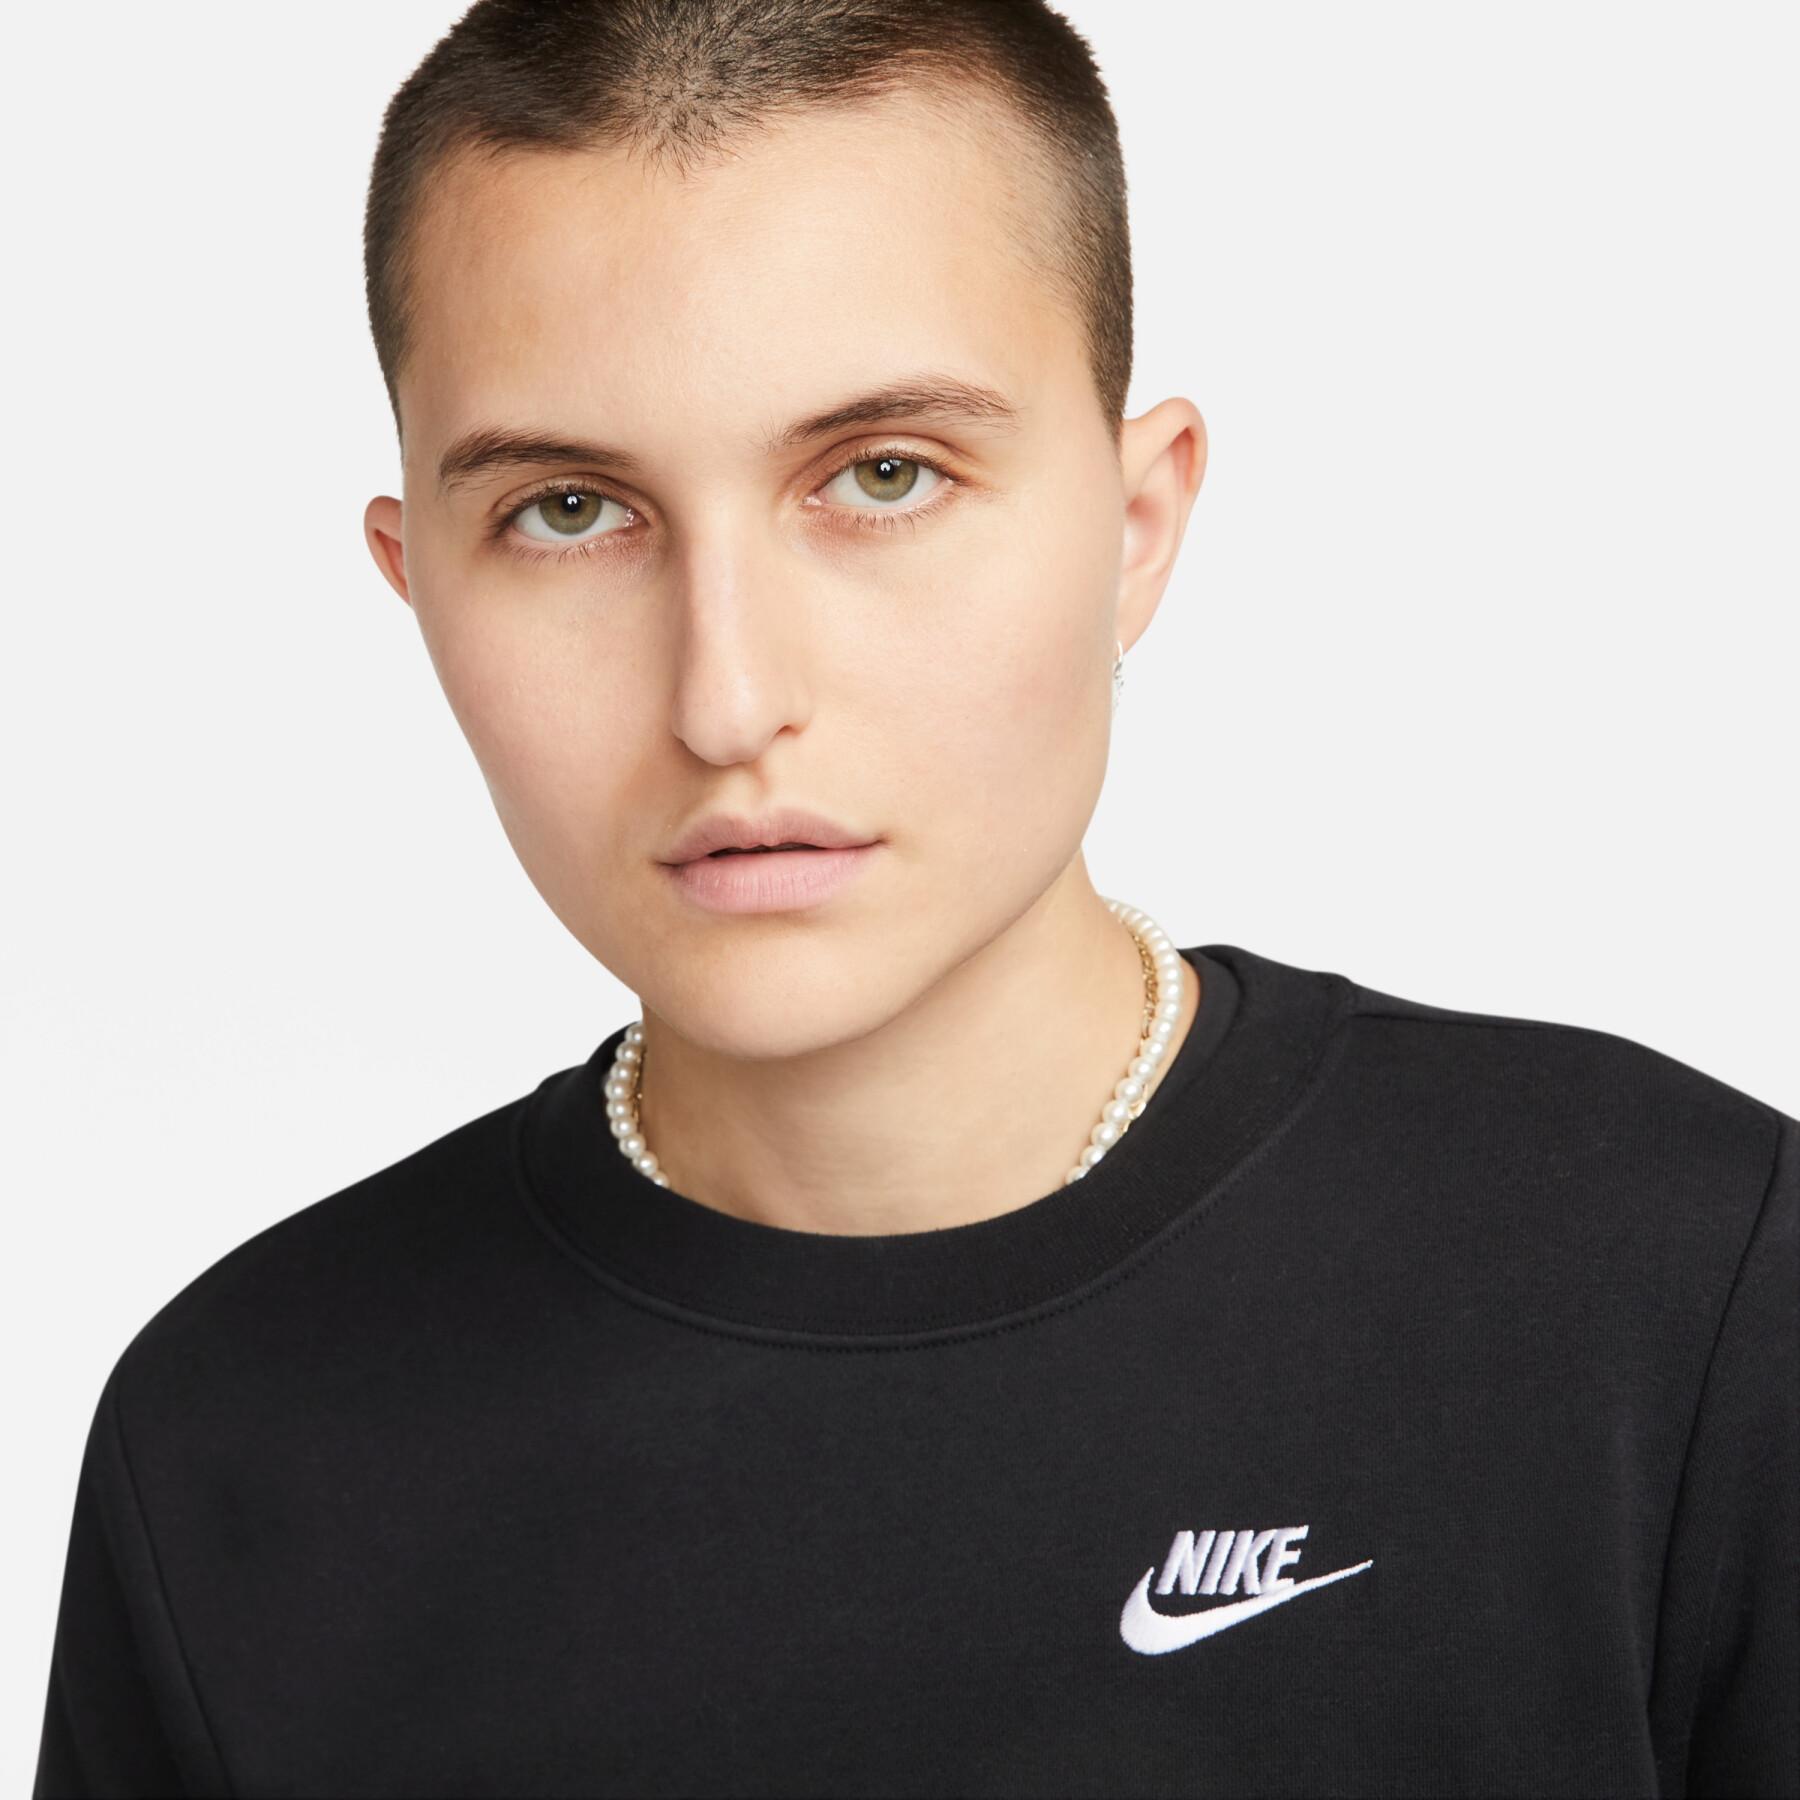 Sweatshirt mit Rundhalsausschnitt, Damen Nike Sportswear Club